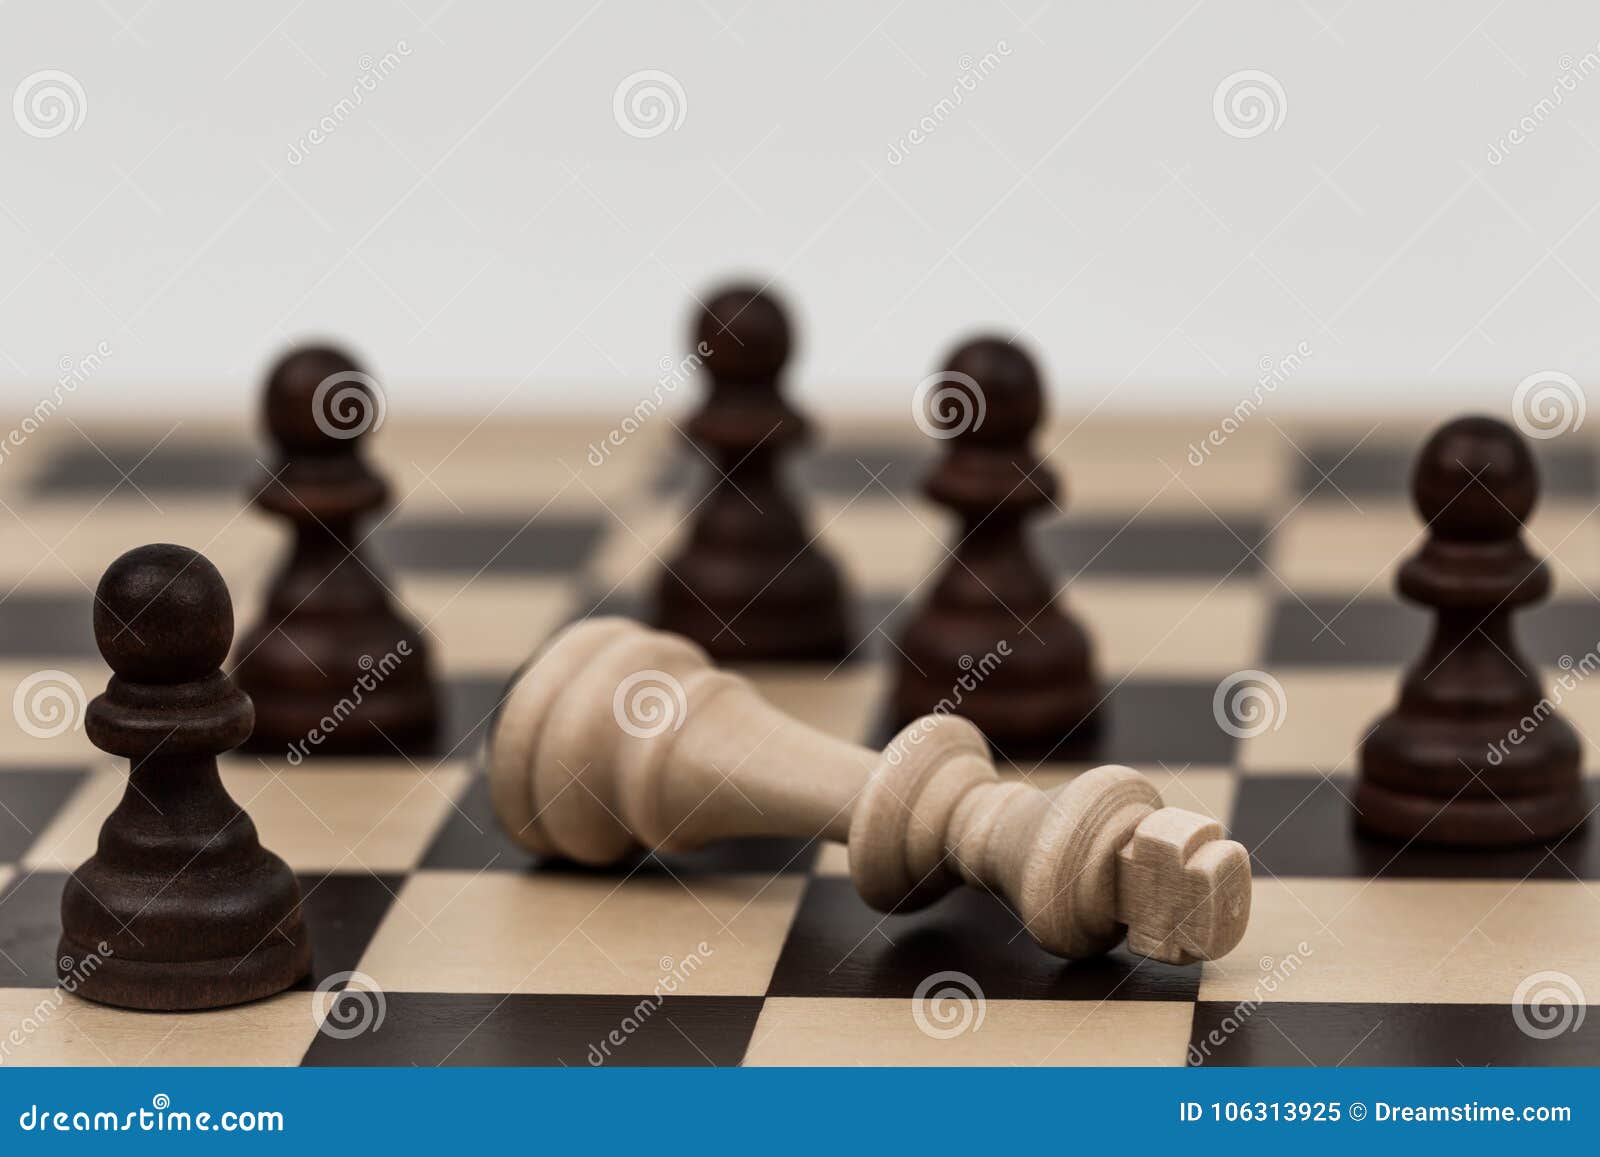 Re negli scacchi è caduto a parecchi pegni. Parecchi pegni battono e conquistano il re su questa scacchiera classica La strategia ed il lavoro di squadra possono sormontare la forza maggiore